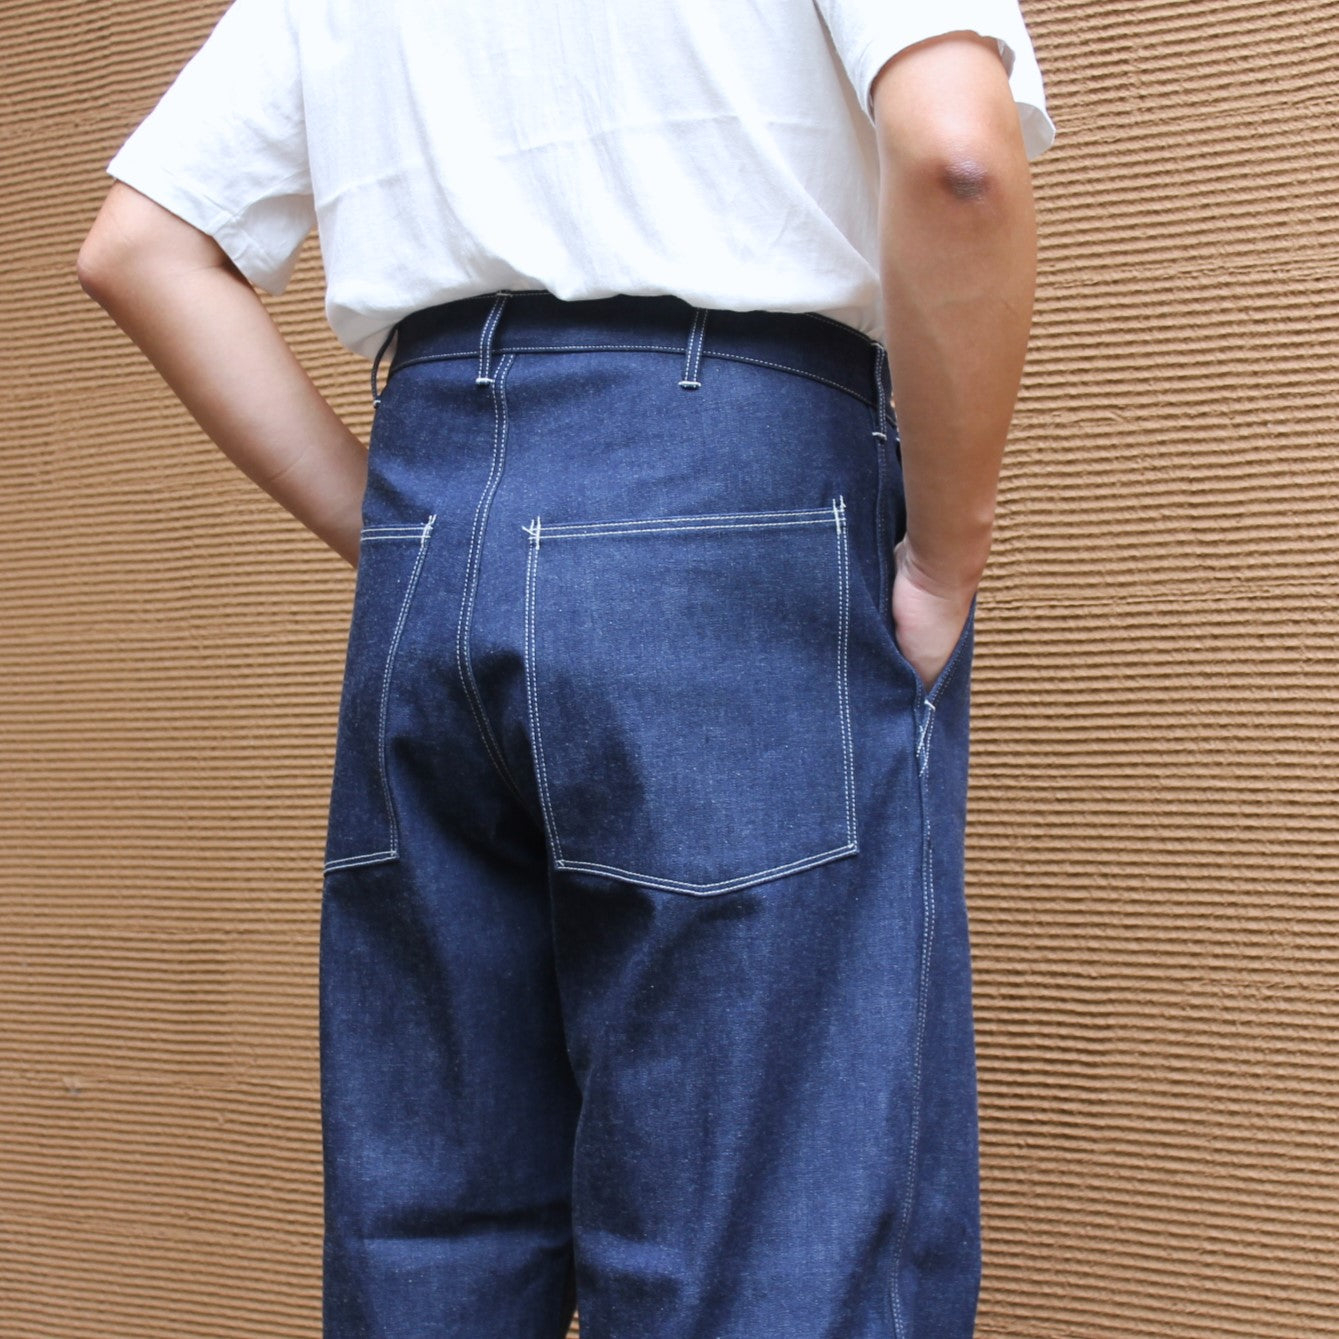 Pantalon en jean de l'armée américaine 1940